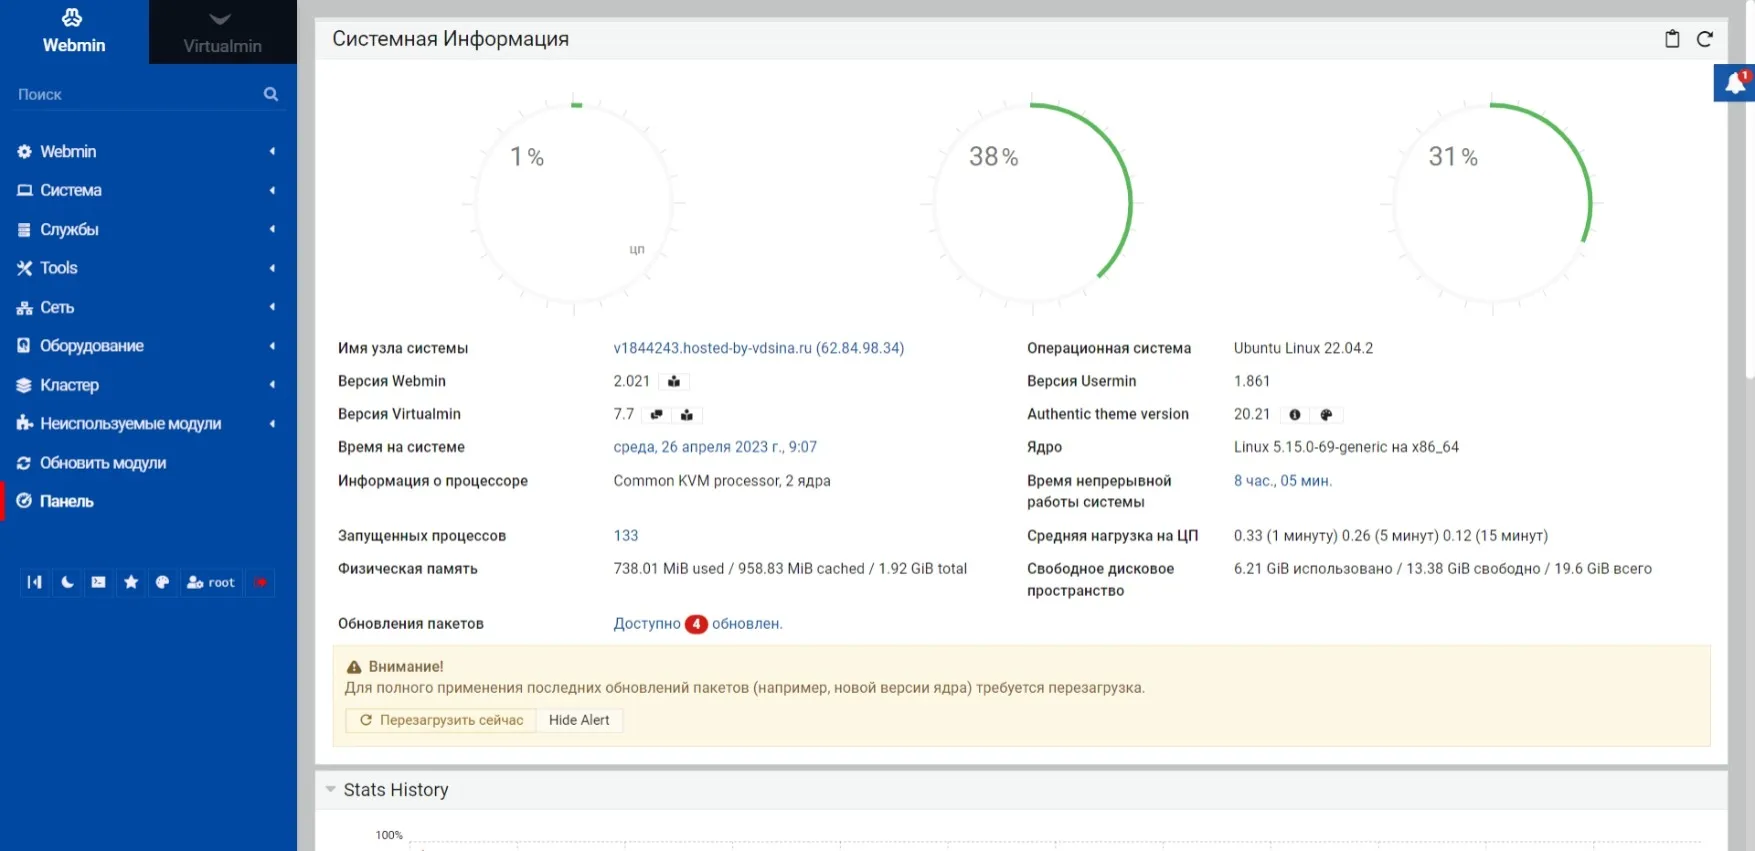 Snimok veb stranicy 26 4 2023 9722 v1844243.hosted by vdsina.ru result